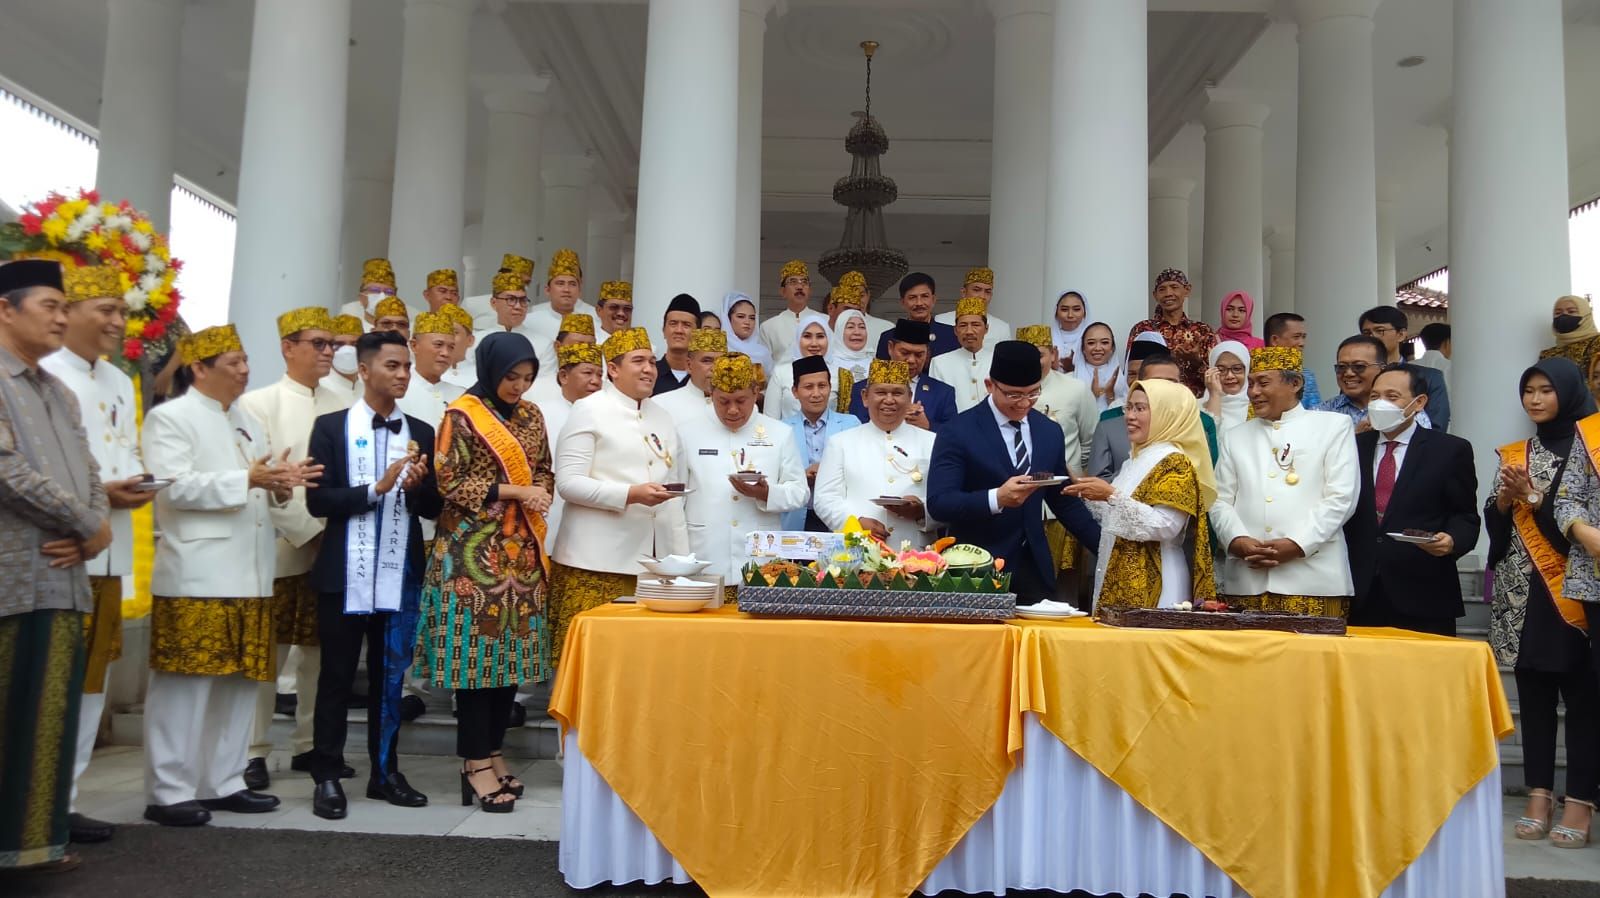 Bupati Serang Ratu Tatu Chasanah saat memberikan potongan kue kepada mantan wakil Gubernur Banten Andika Hazrumy dalam momen HUT ke 496 Kabupaten Serang di halaman pendopo Bupati Serang, Sabtu 8 Oktober 2022.